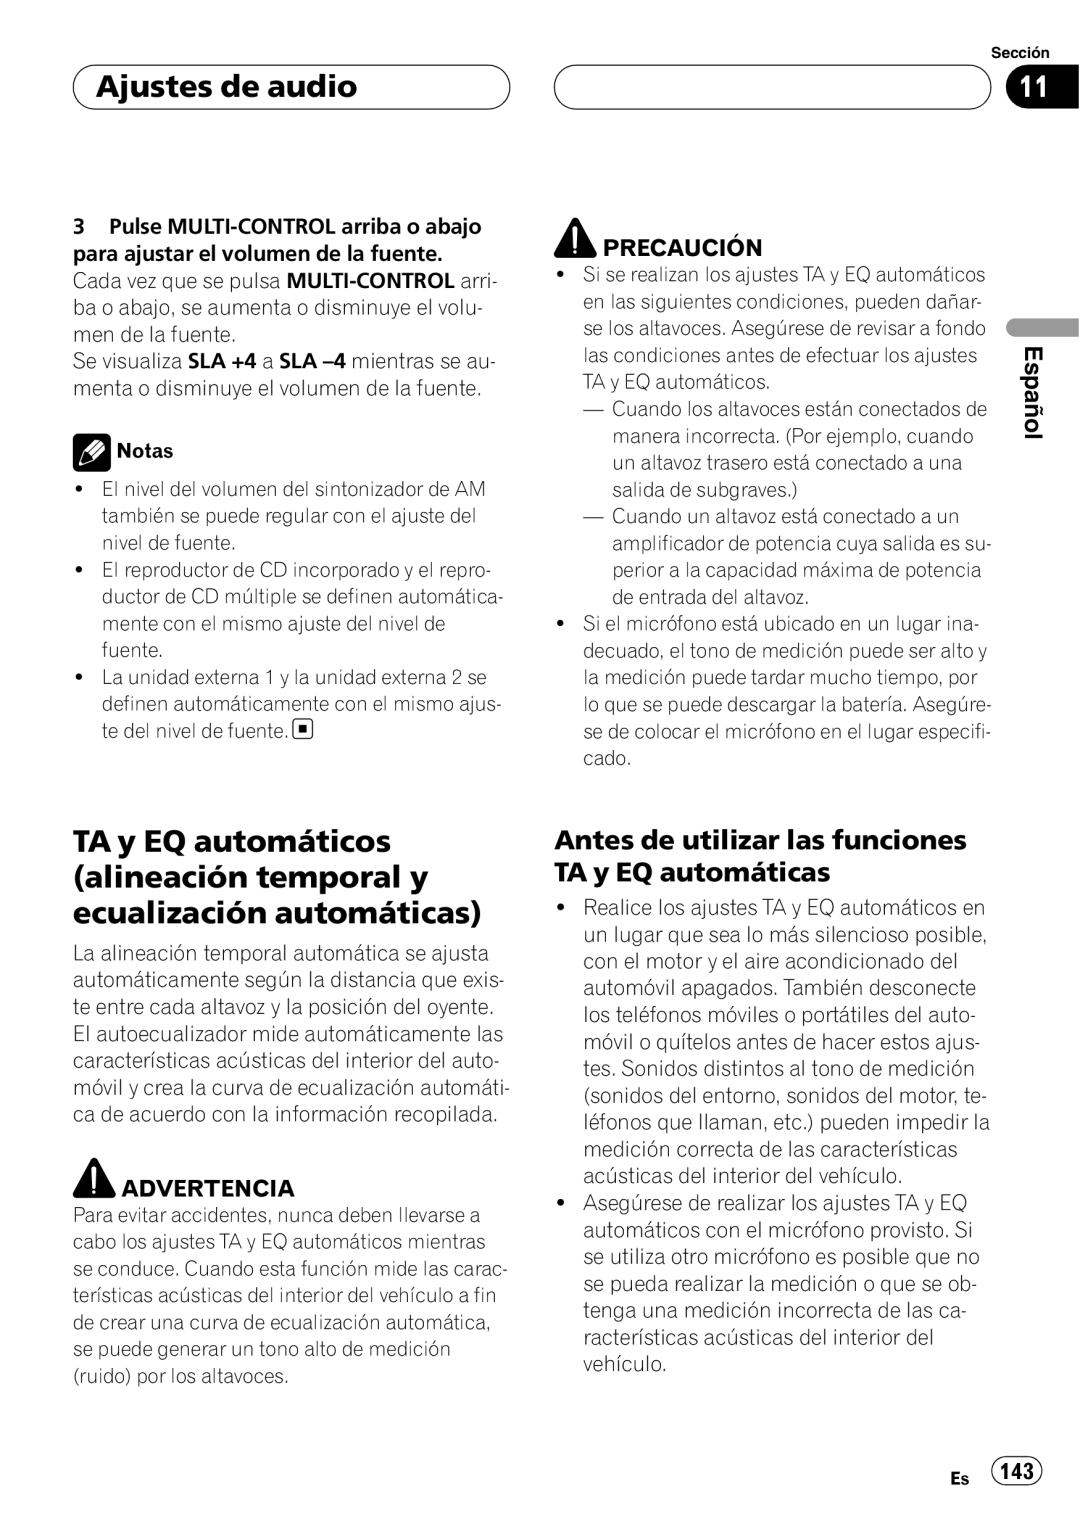 Pioneer DEH-P80RS operation manual Ajustes de audio, Español, Precaución, Advertencia 